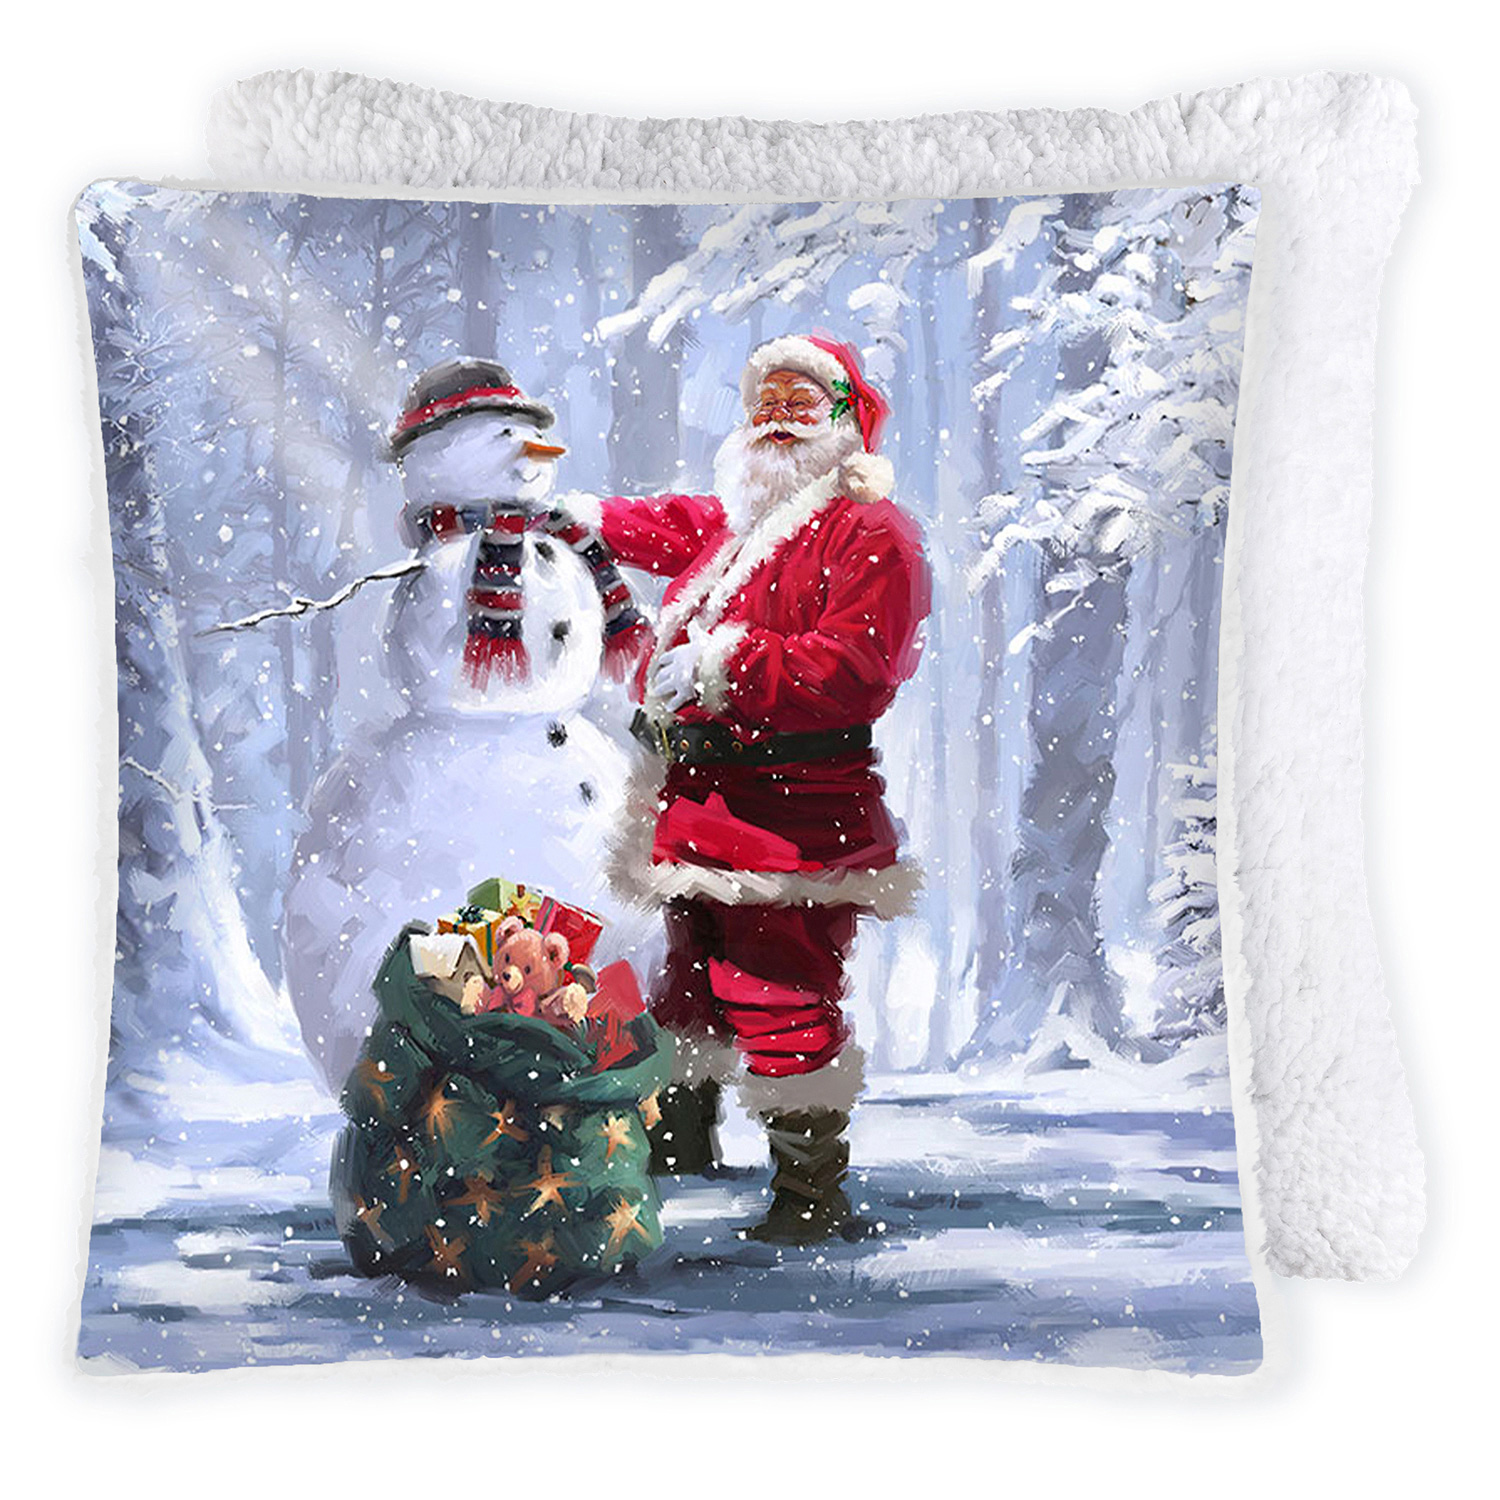 Printed photoreal cushion, 17"x17" - Santa Claus